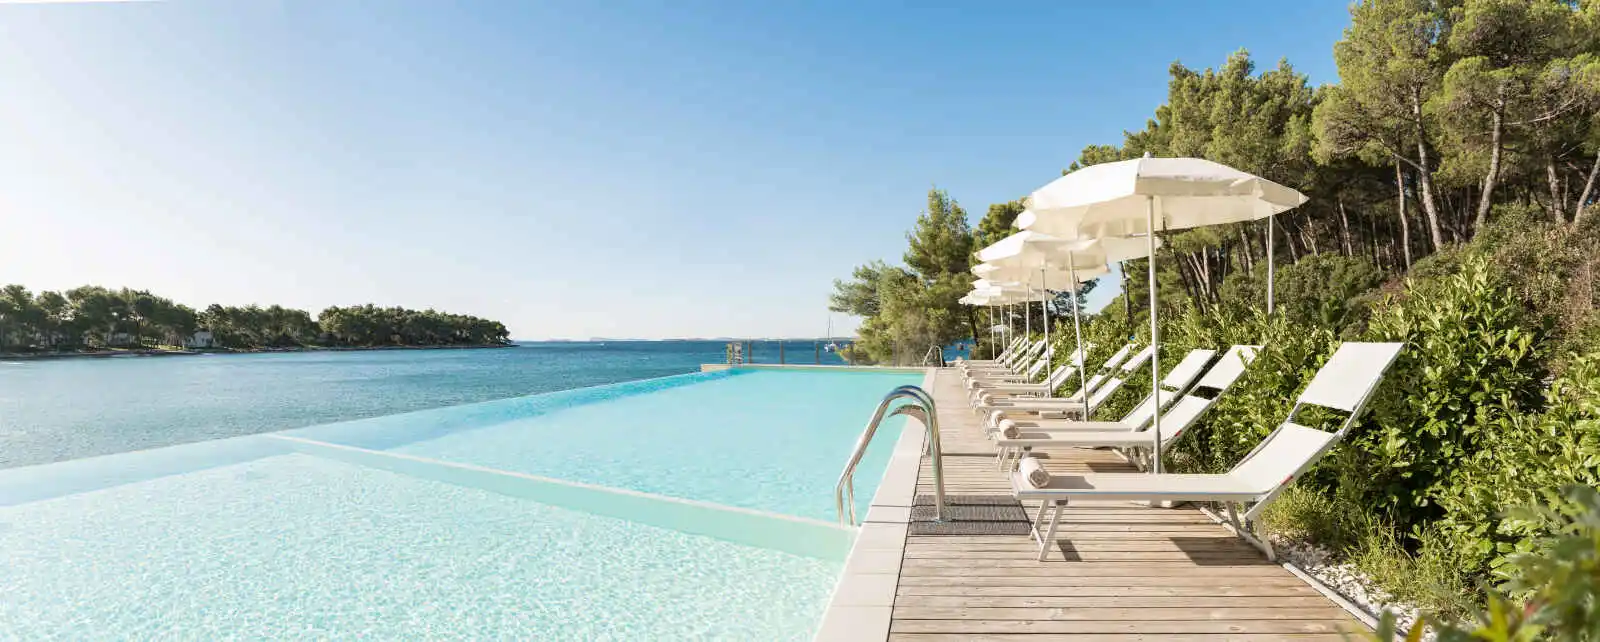 Croatie - Biograd - Hôtel Crvena Luka Resort 4*